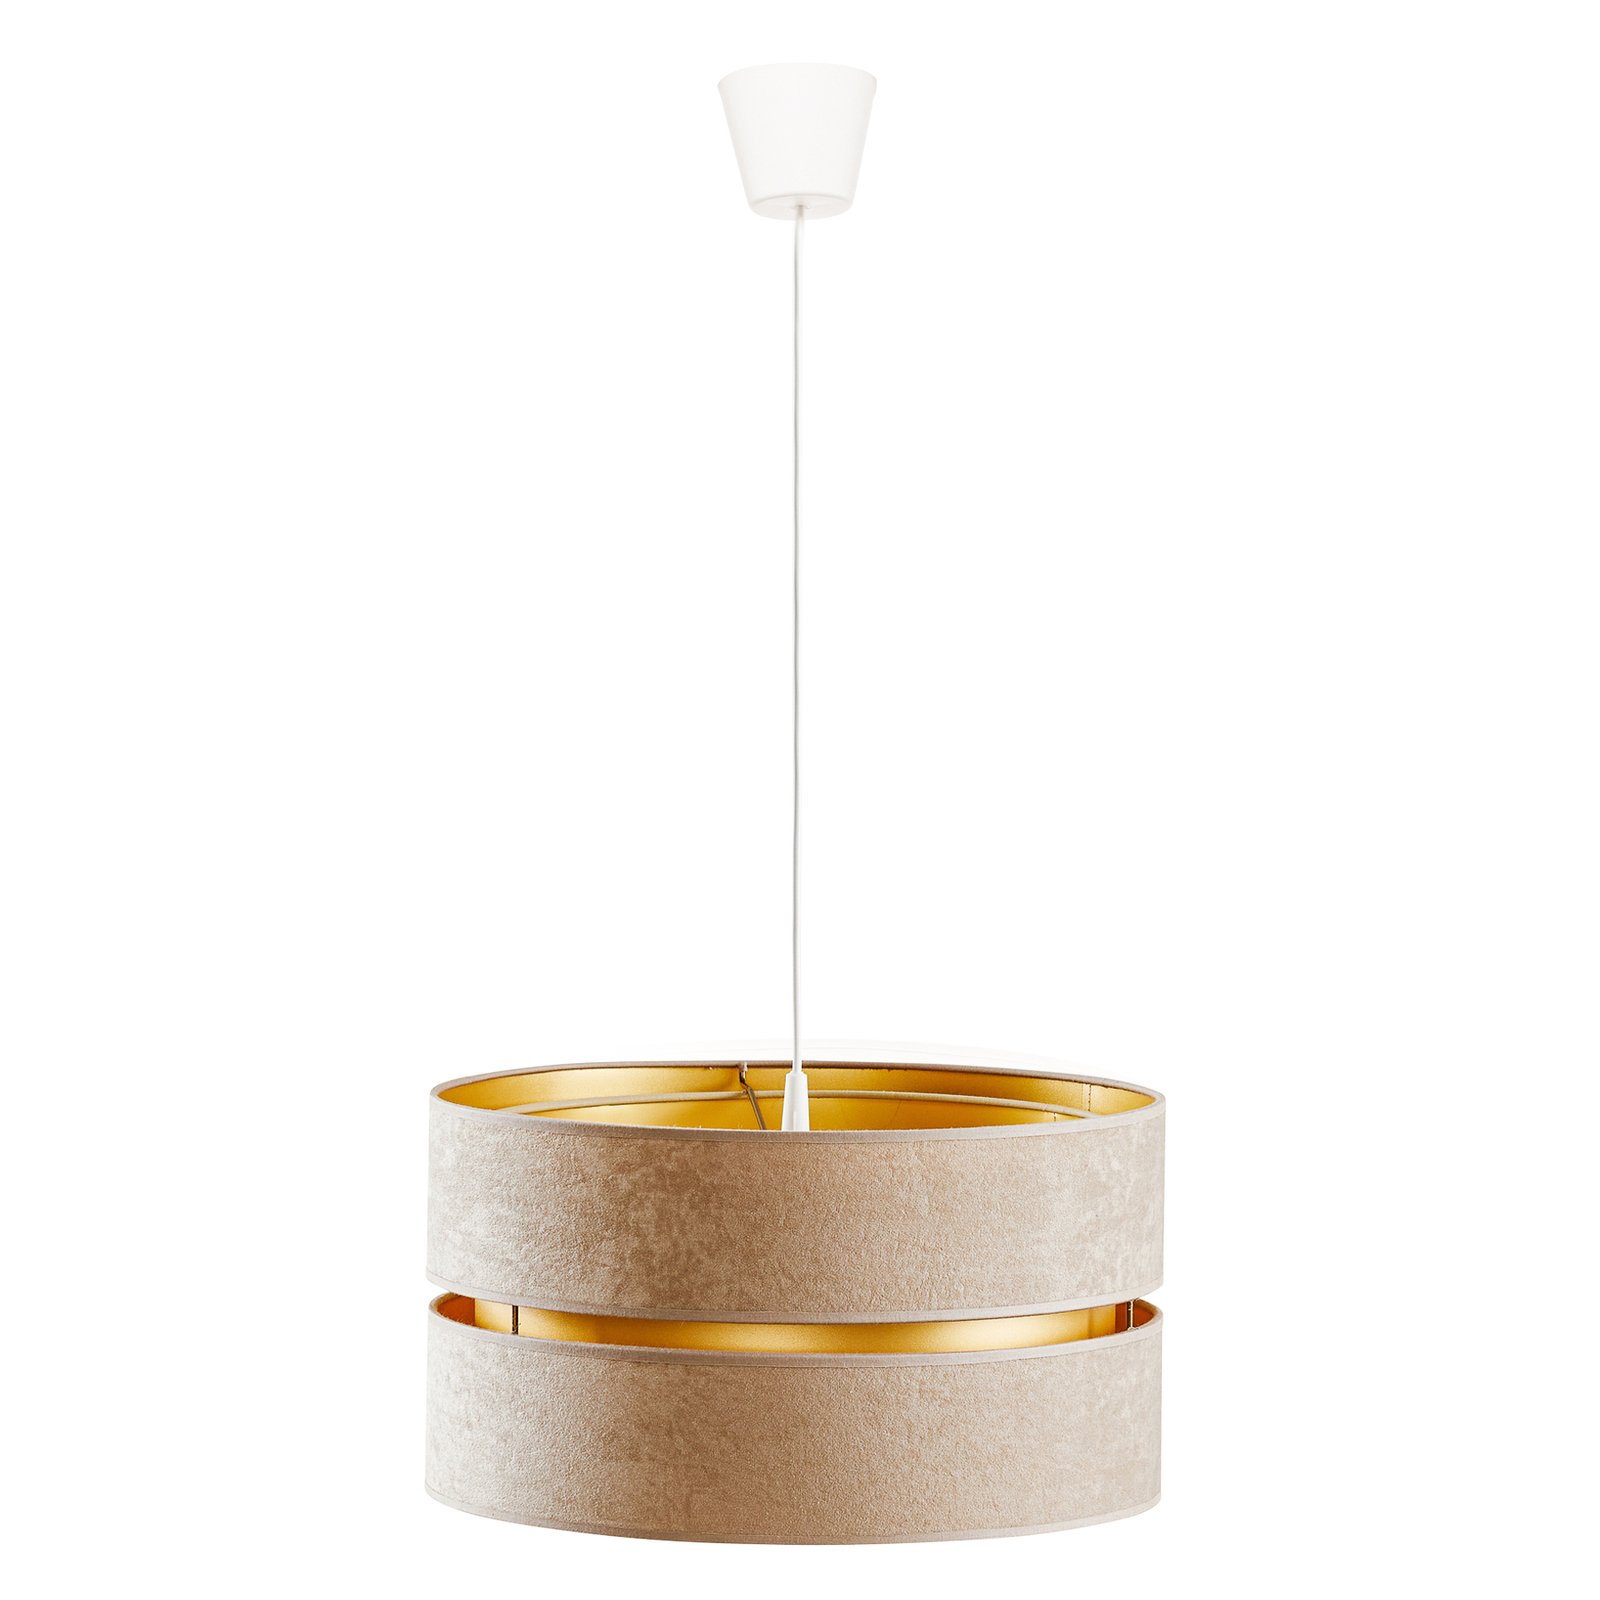 Hanglamp Duo, beige/goud, Ø40cm, 1-lamp